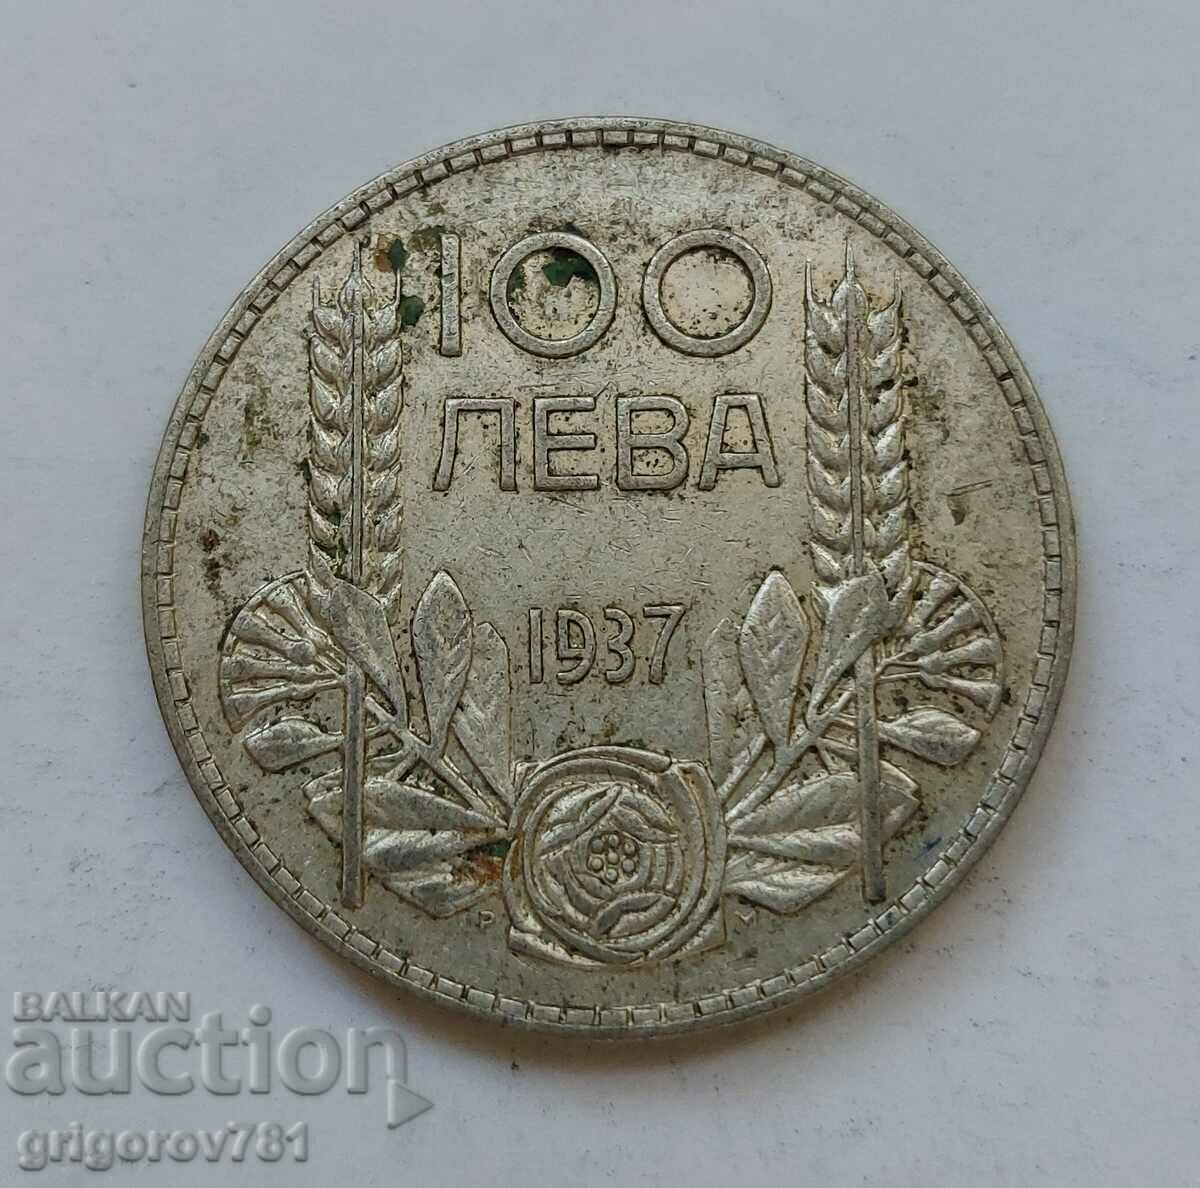 Ασήμι 100 λέβα Βουλγαρία 1937 - ασημένιο νόμισμα #135